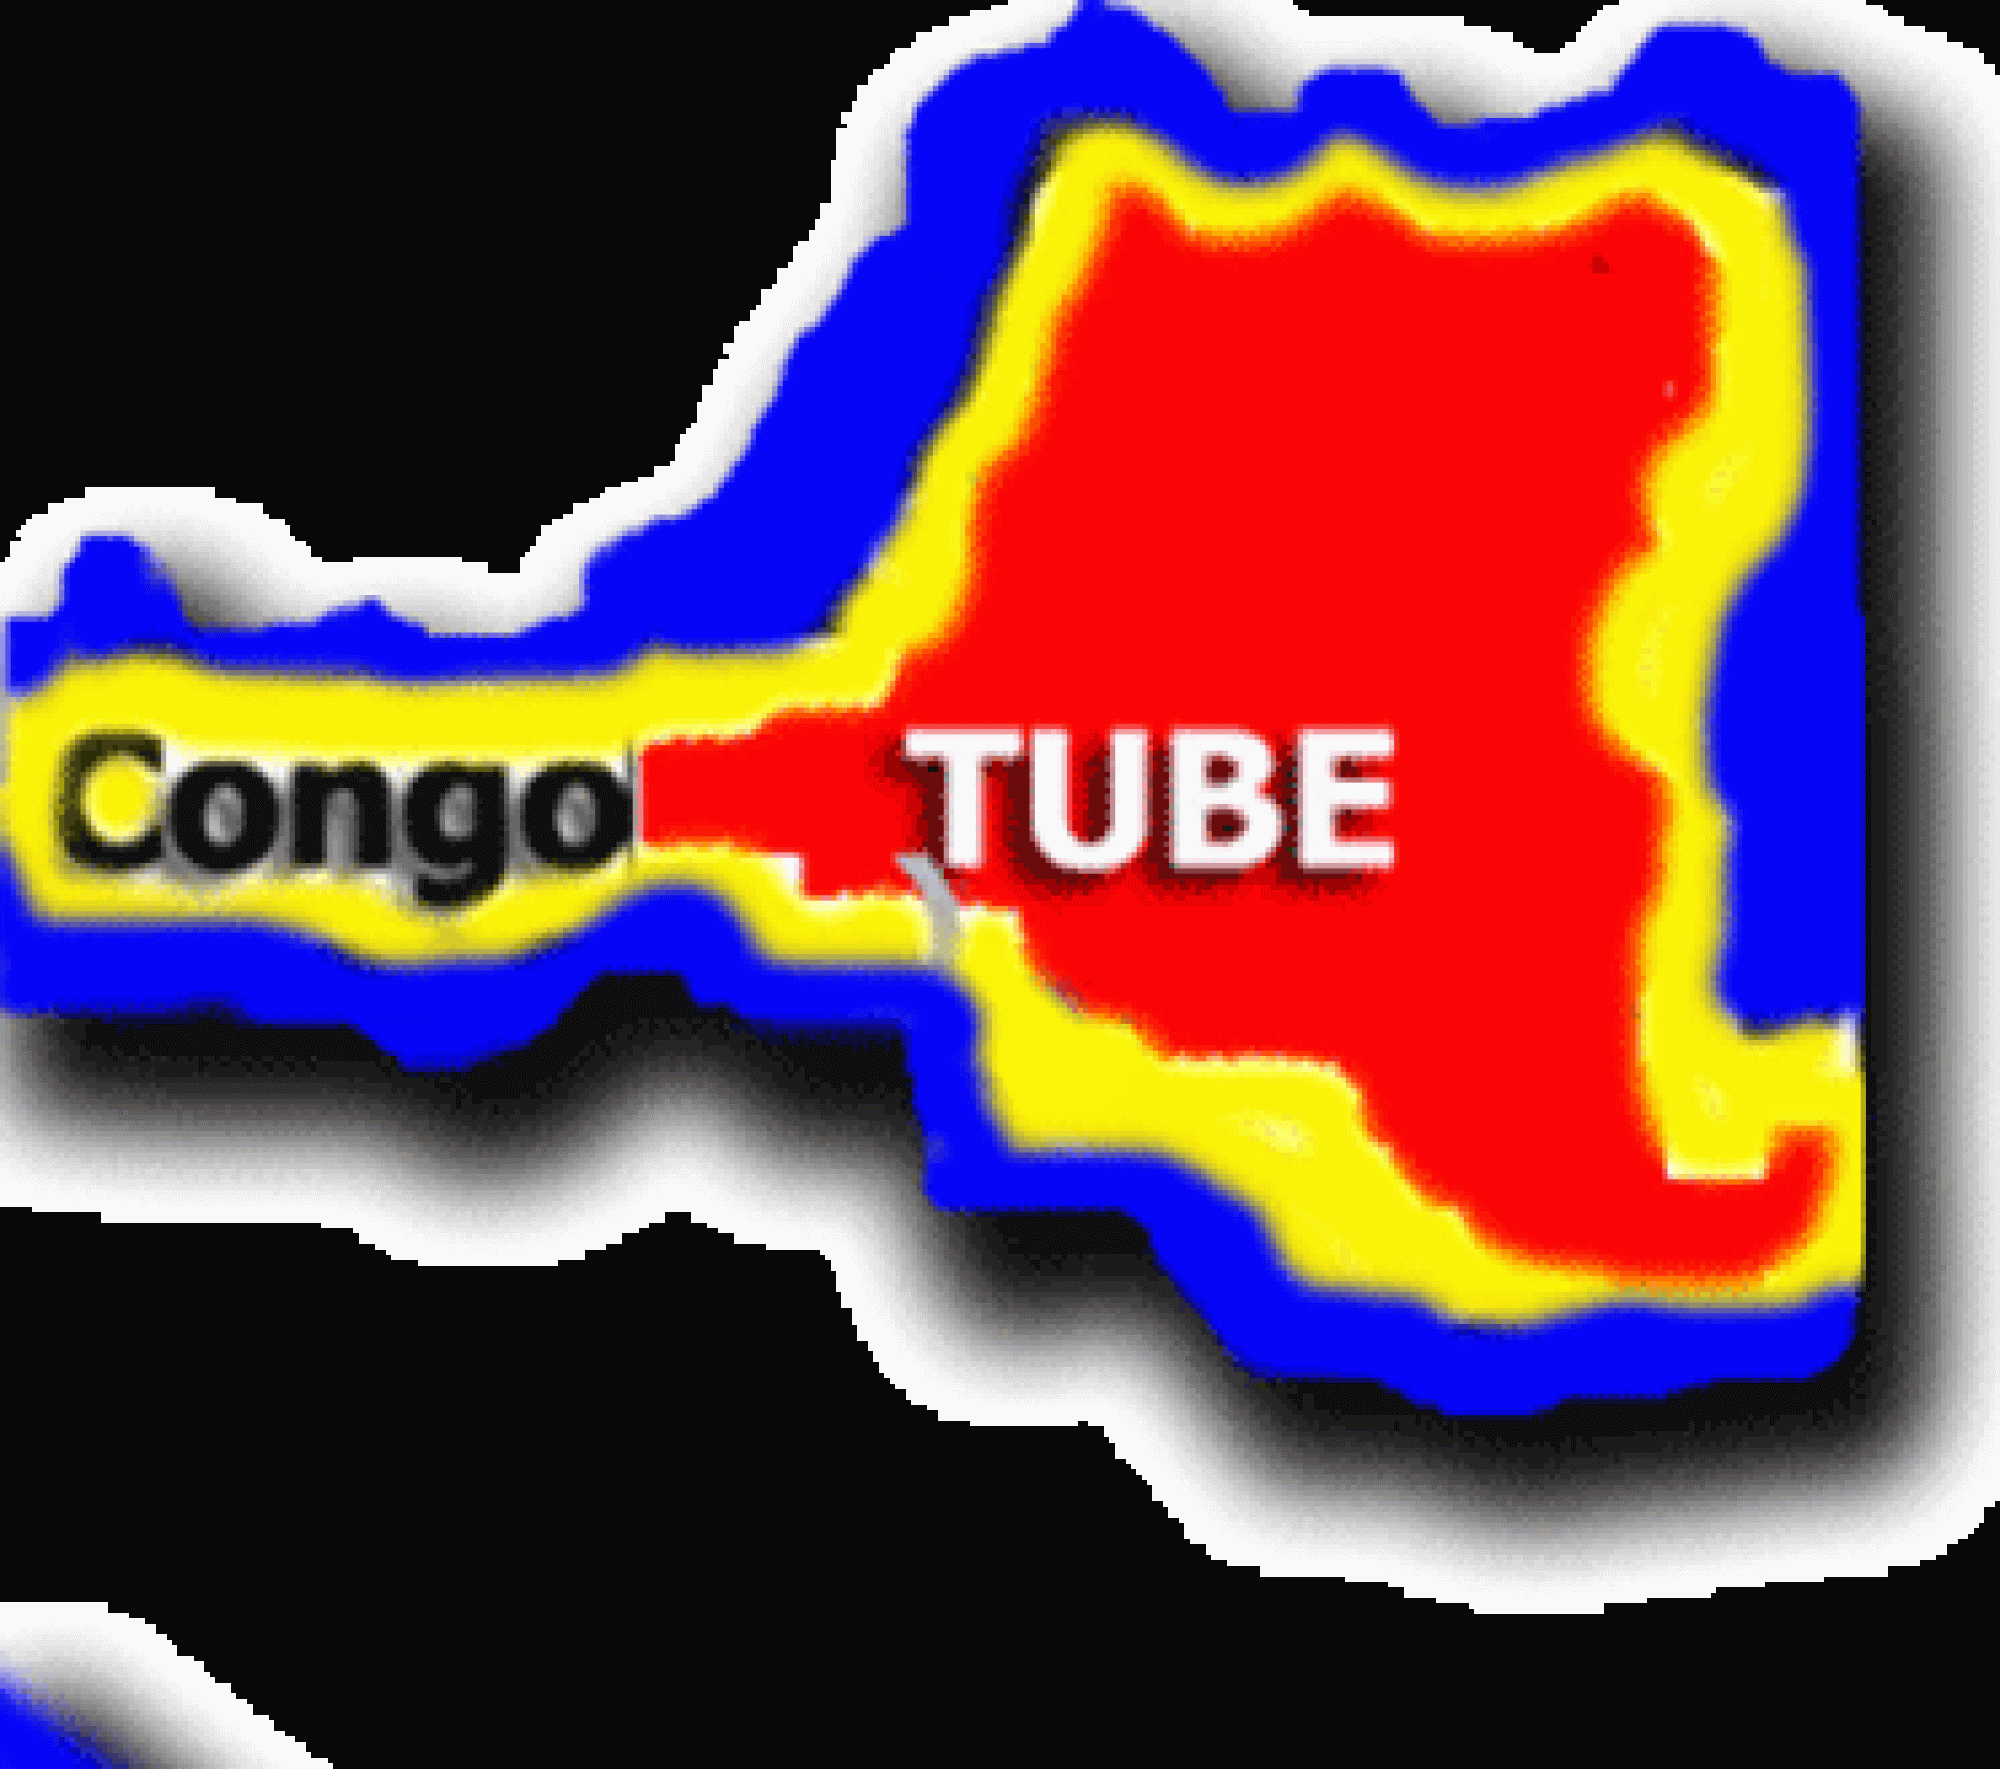 Congotube.com